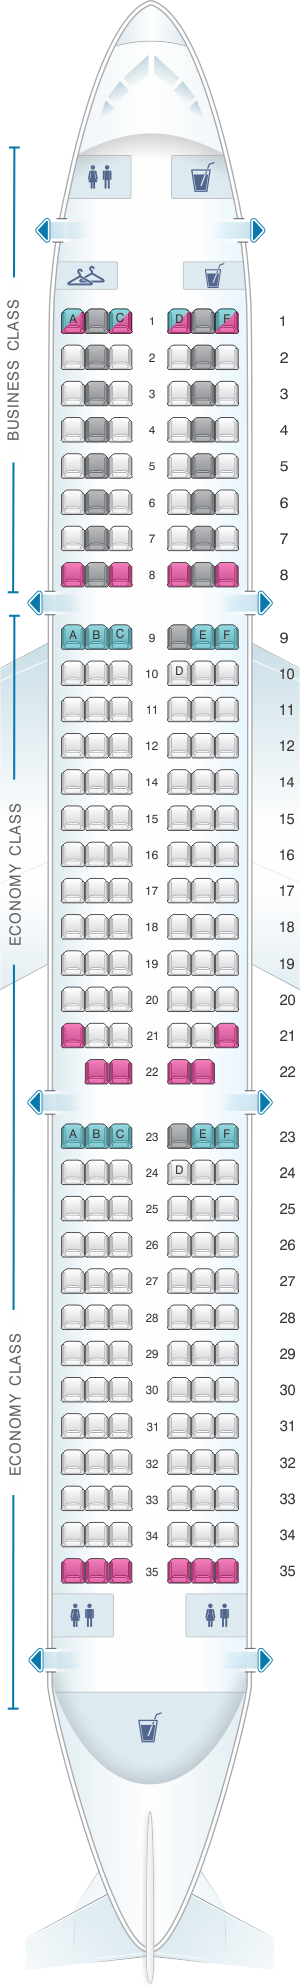 Air France Flight Information - SeatGuru